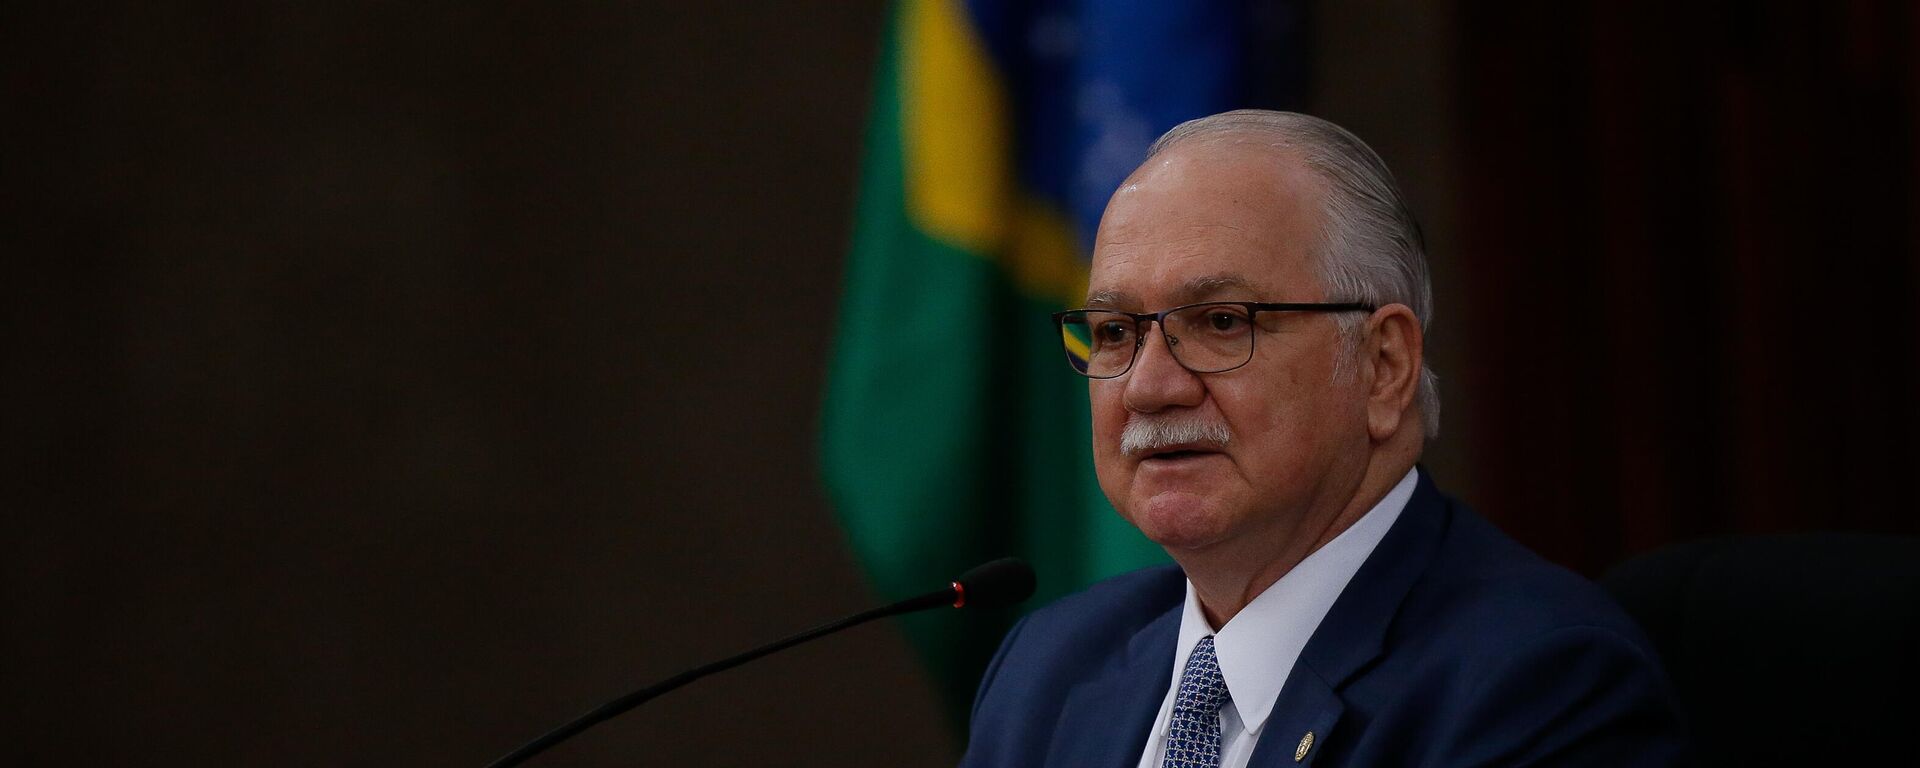 O ministro Luiz Edson Fachin, novo presidente do TSE (Tribunal Superior Eleitoral) em 23 de fevereiro de 2022 - Sputnik Brasil, 1920, 12.05.2022